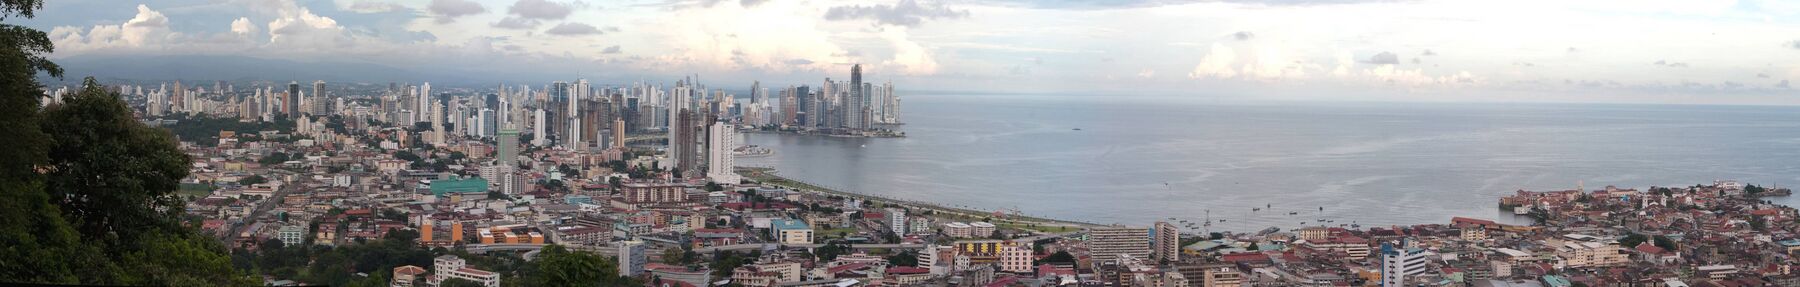 Скайлайн города Панама в 2009 году.